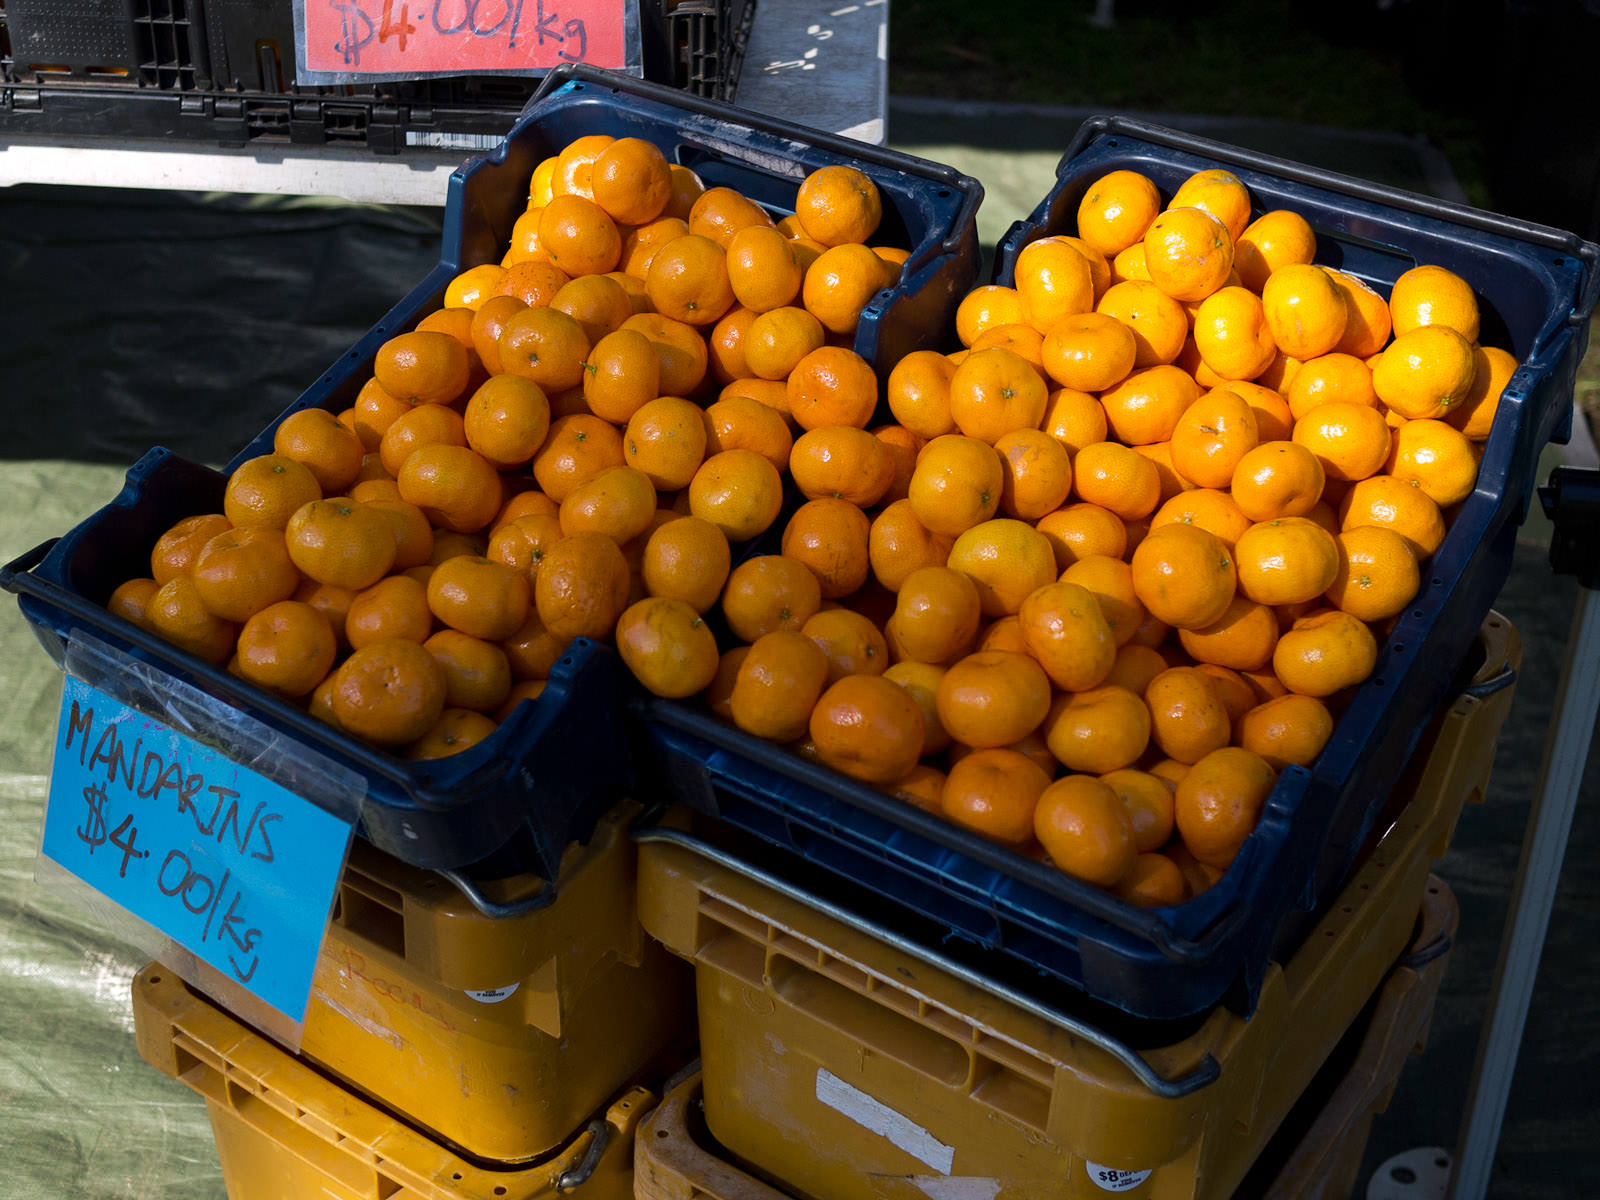 More mandarins